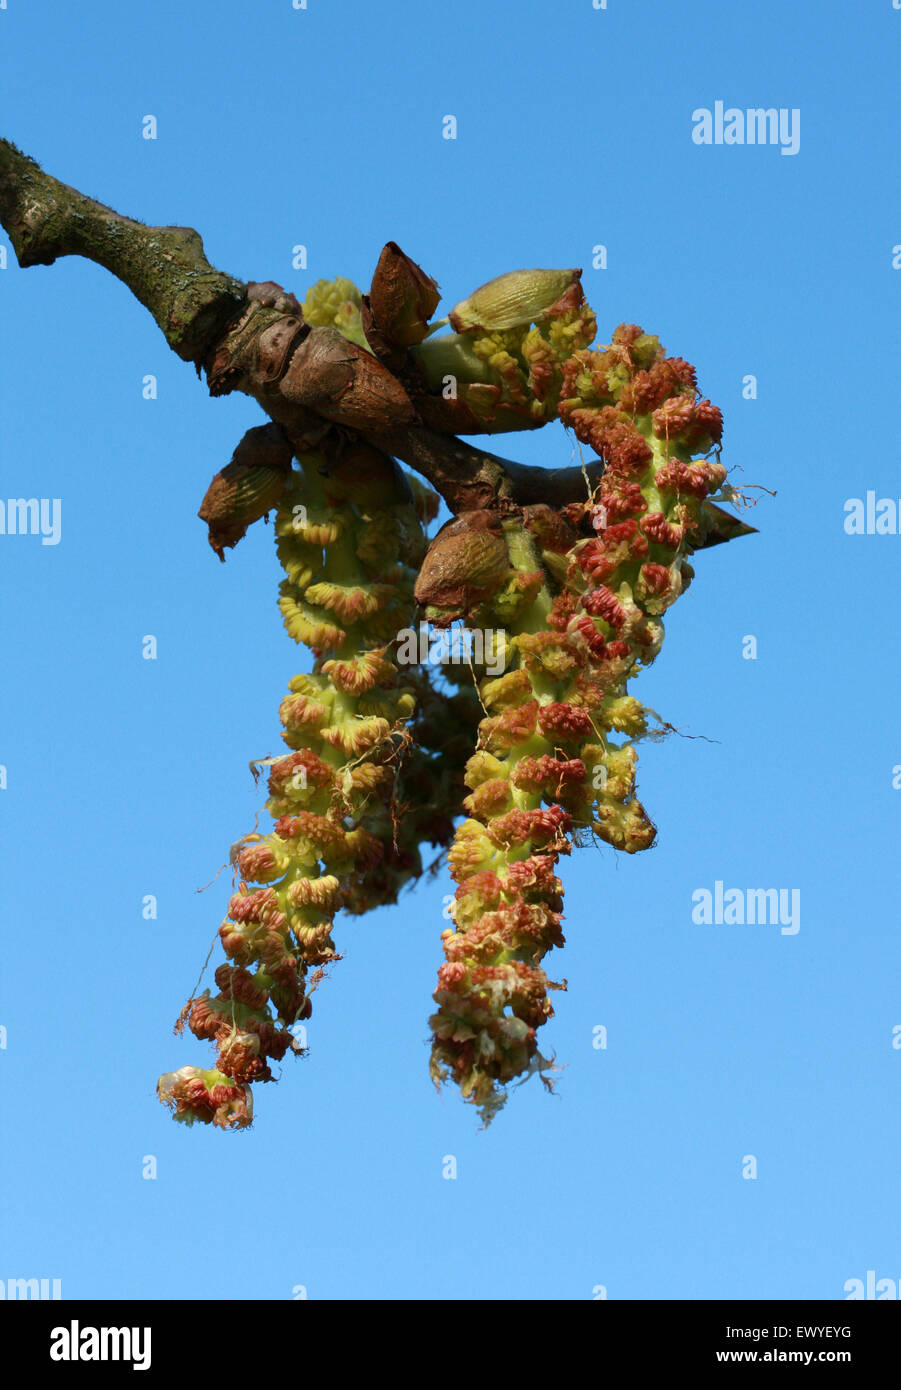 Collar chino Poplar, Populus amentos, Salicaceae lasiocarpa. China meridional y central. Nativo de bosques húmedos de China. Foto de stock